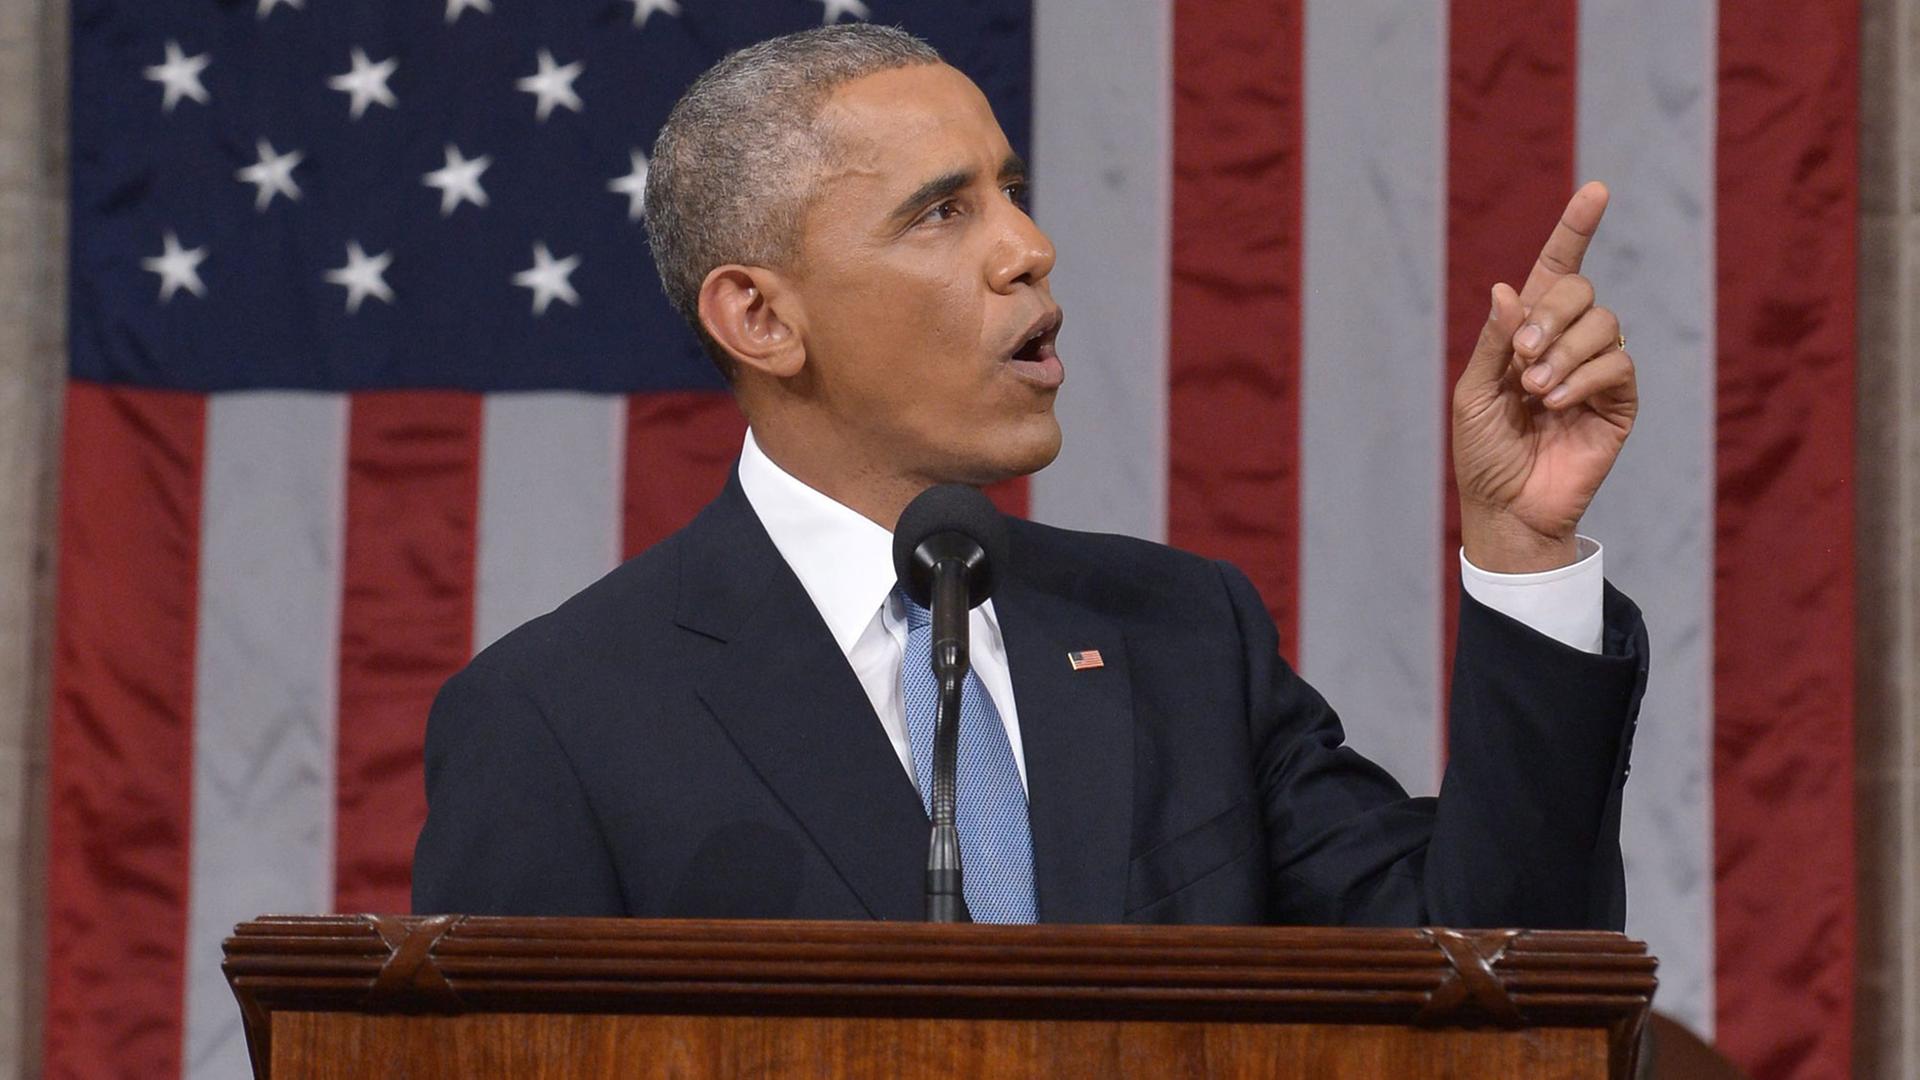 Obama steht vor einer USA-Fahne und zeigt mit dem Finger nach oben.